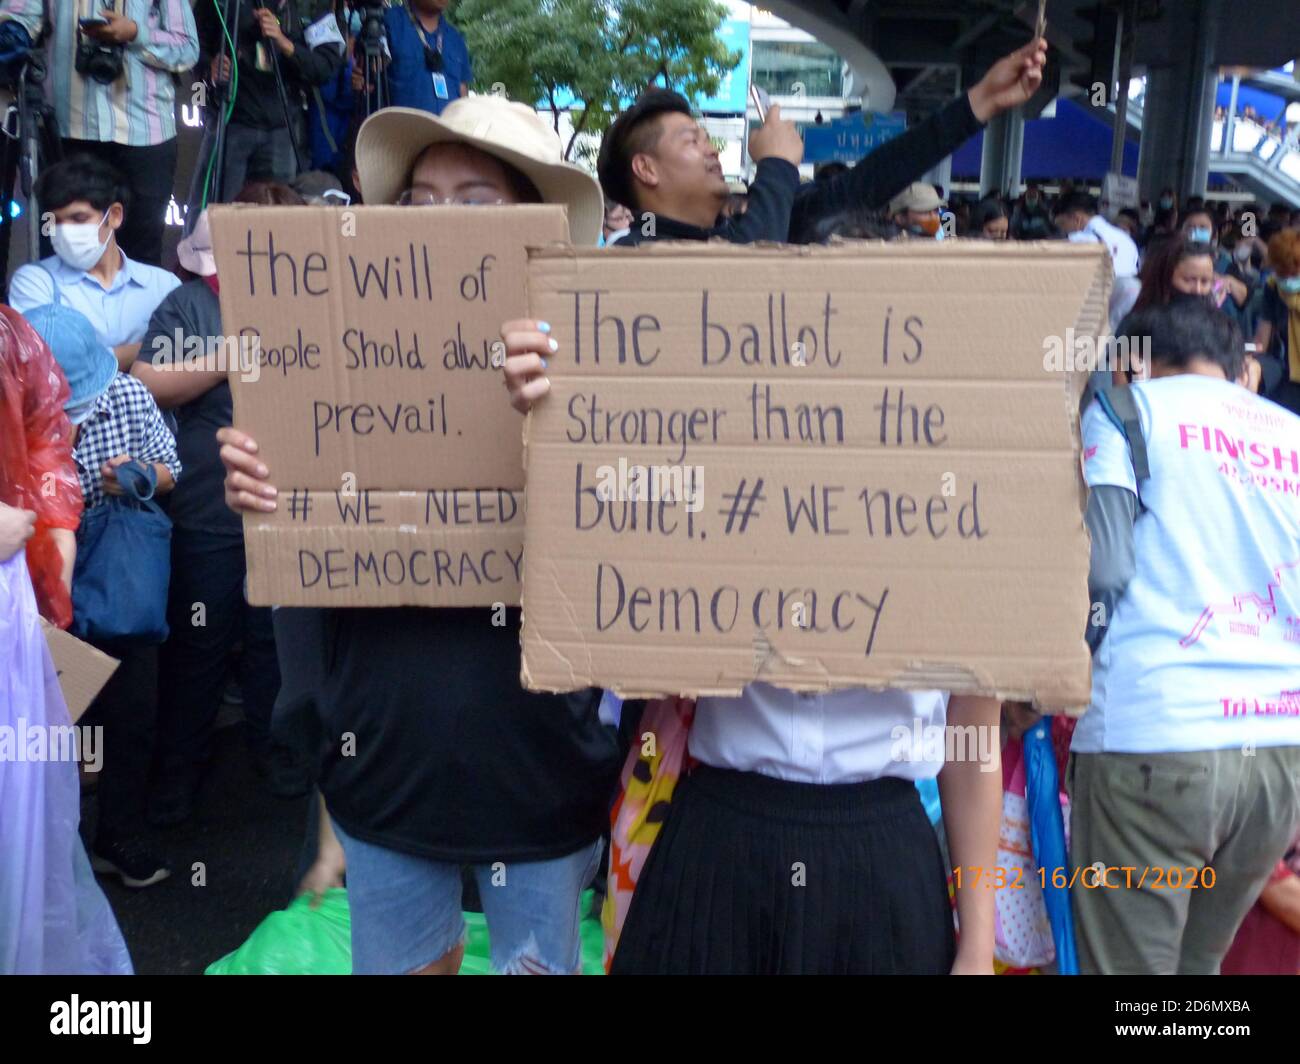 Des signes anglais tenus par des manifestants lors d'une manifestation anti-gouvernementale par des jeunes à l'intersection de Pathumwan, Bangkok, Thaïlande, le 16 octobre 2020. Banque D'Images